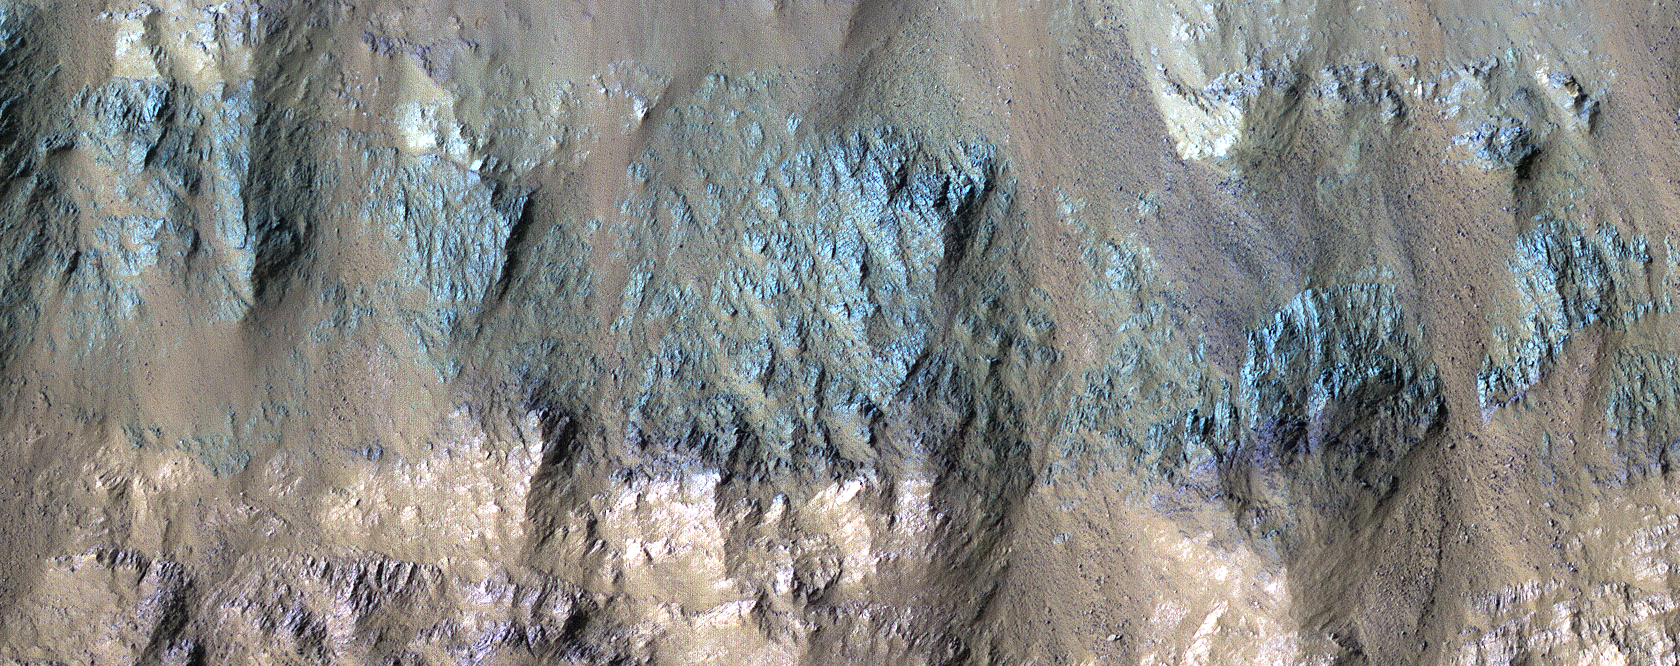 Tipos de roca variados en un cráter de Eos Chasma